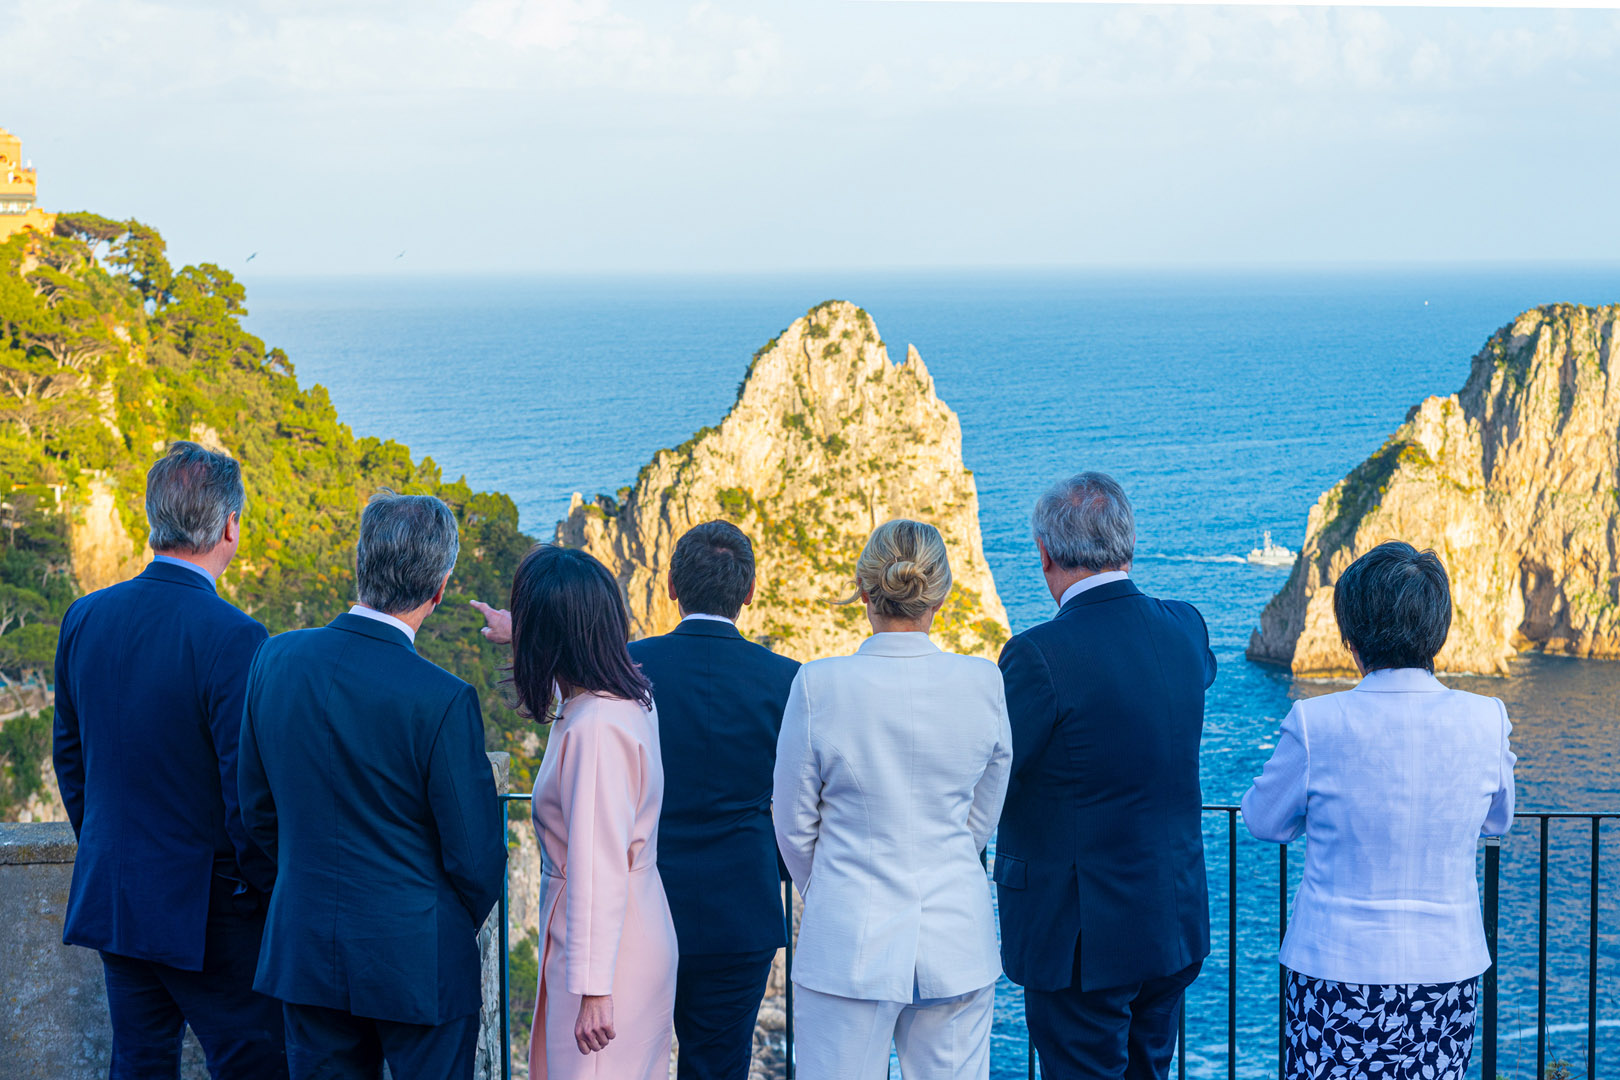 Da Capri, la ministeriale G7 guarda all’Indo Pacifico